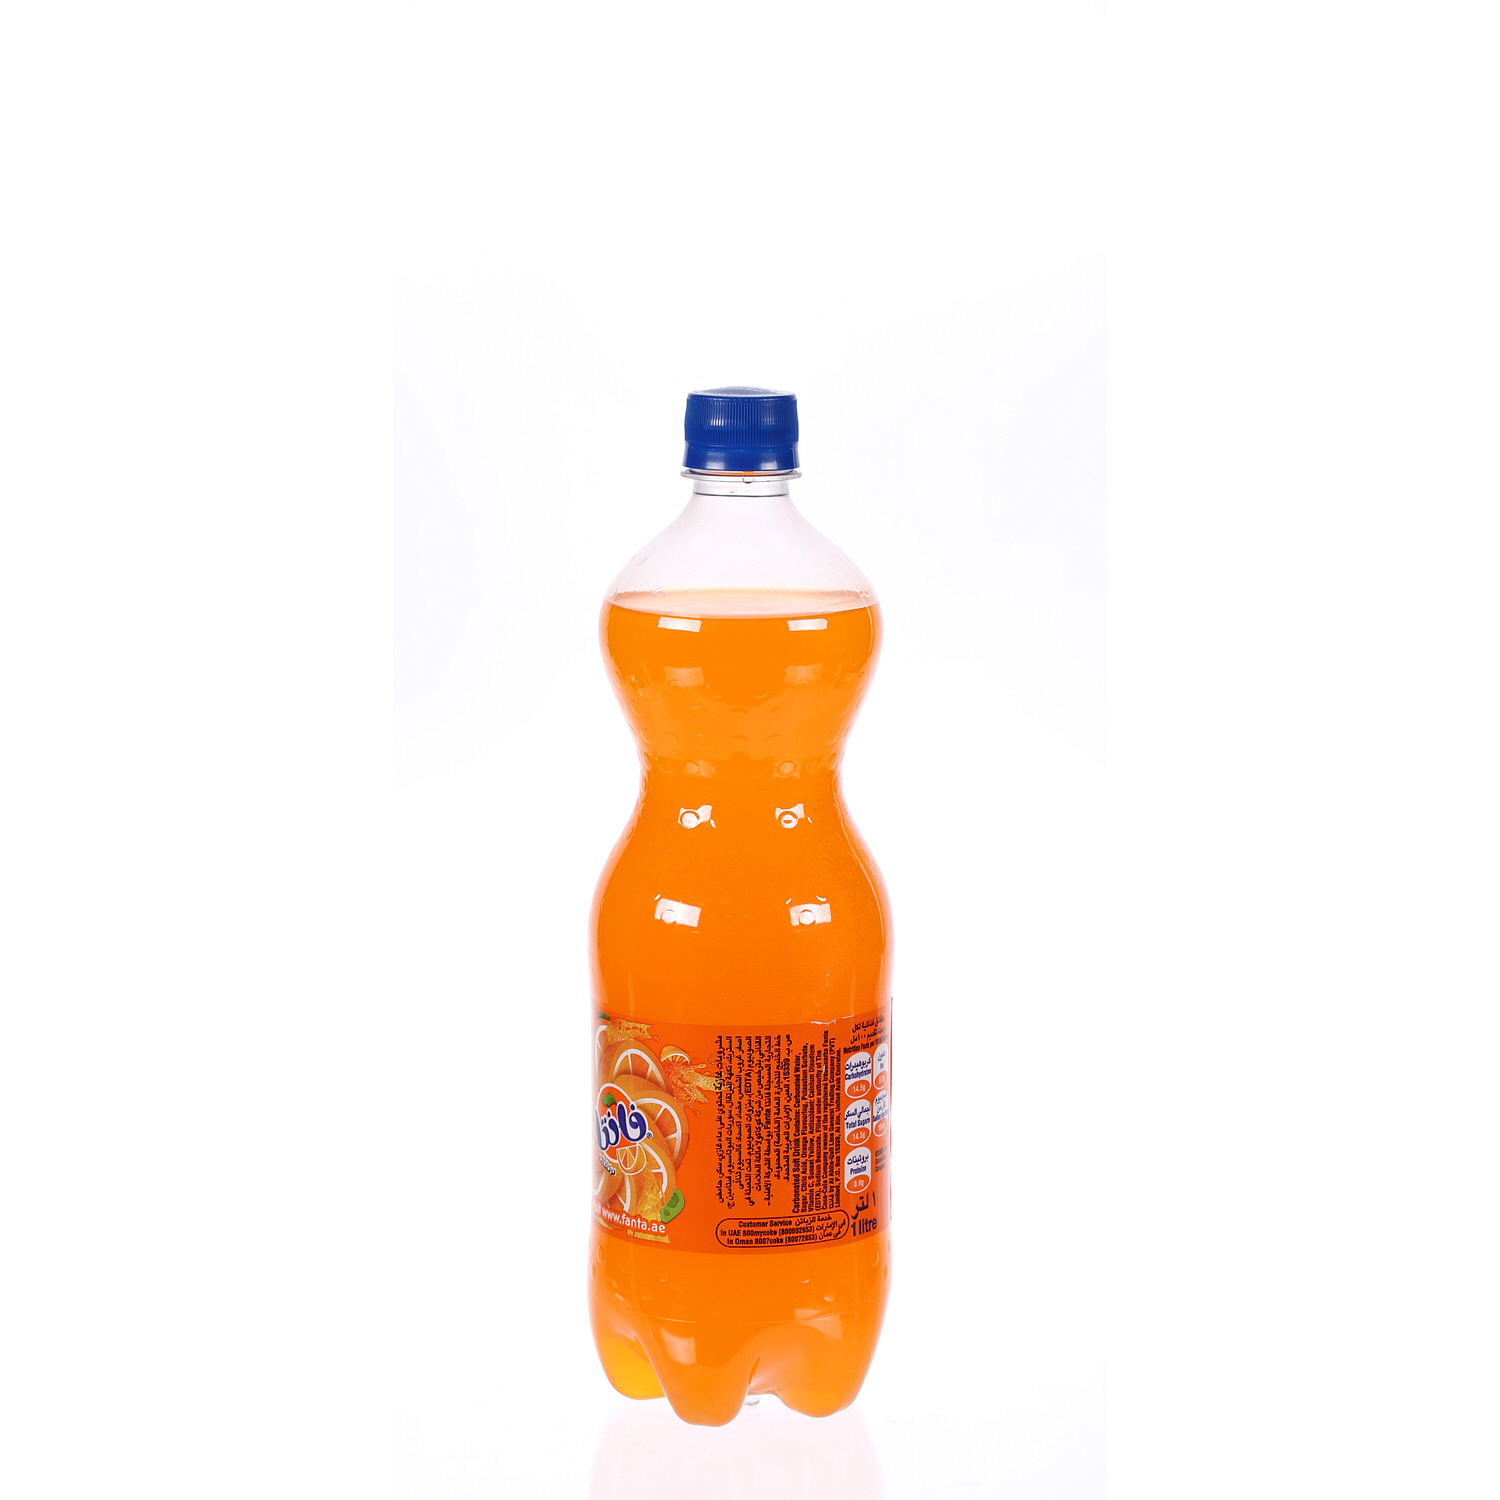 Fanta Orange 1 L